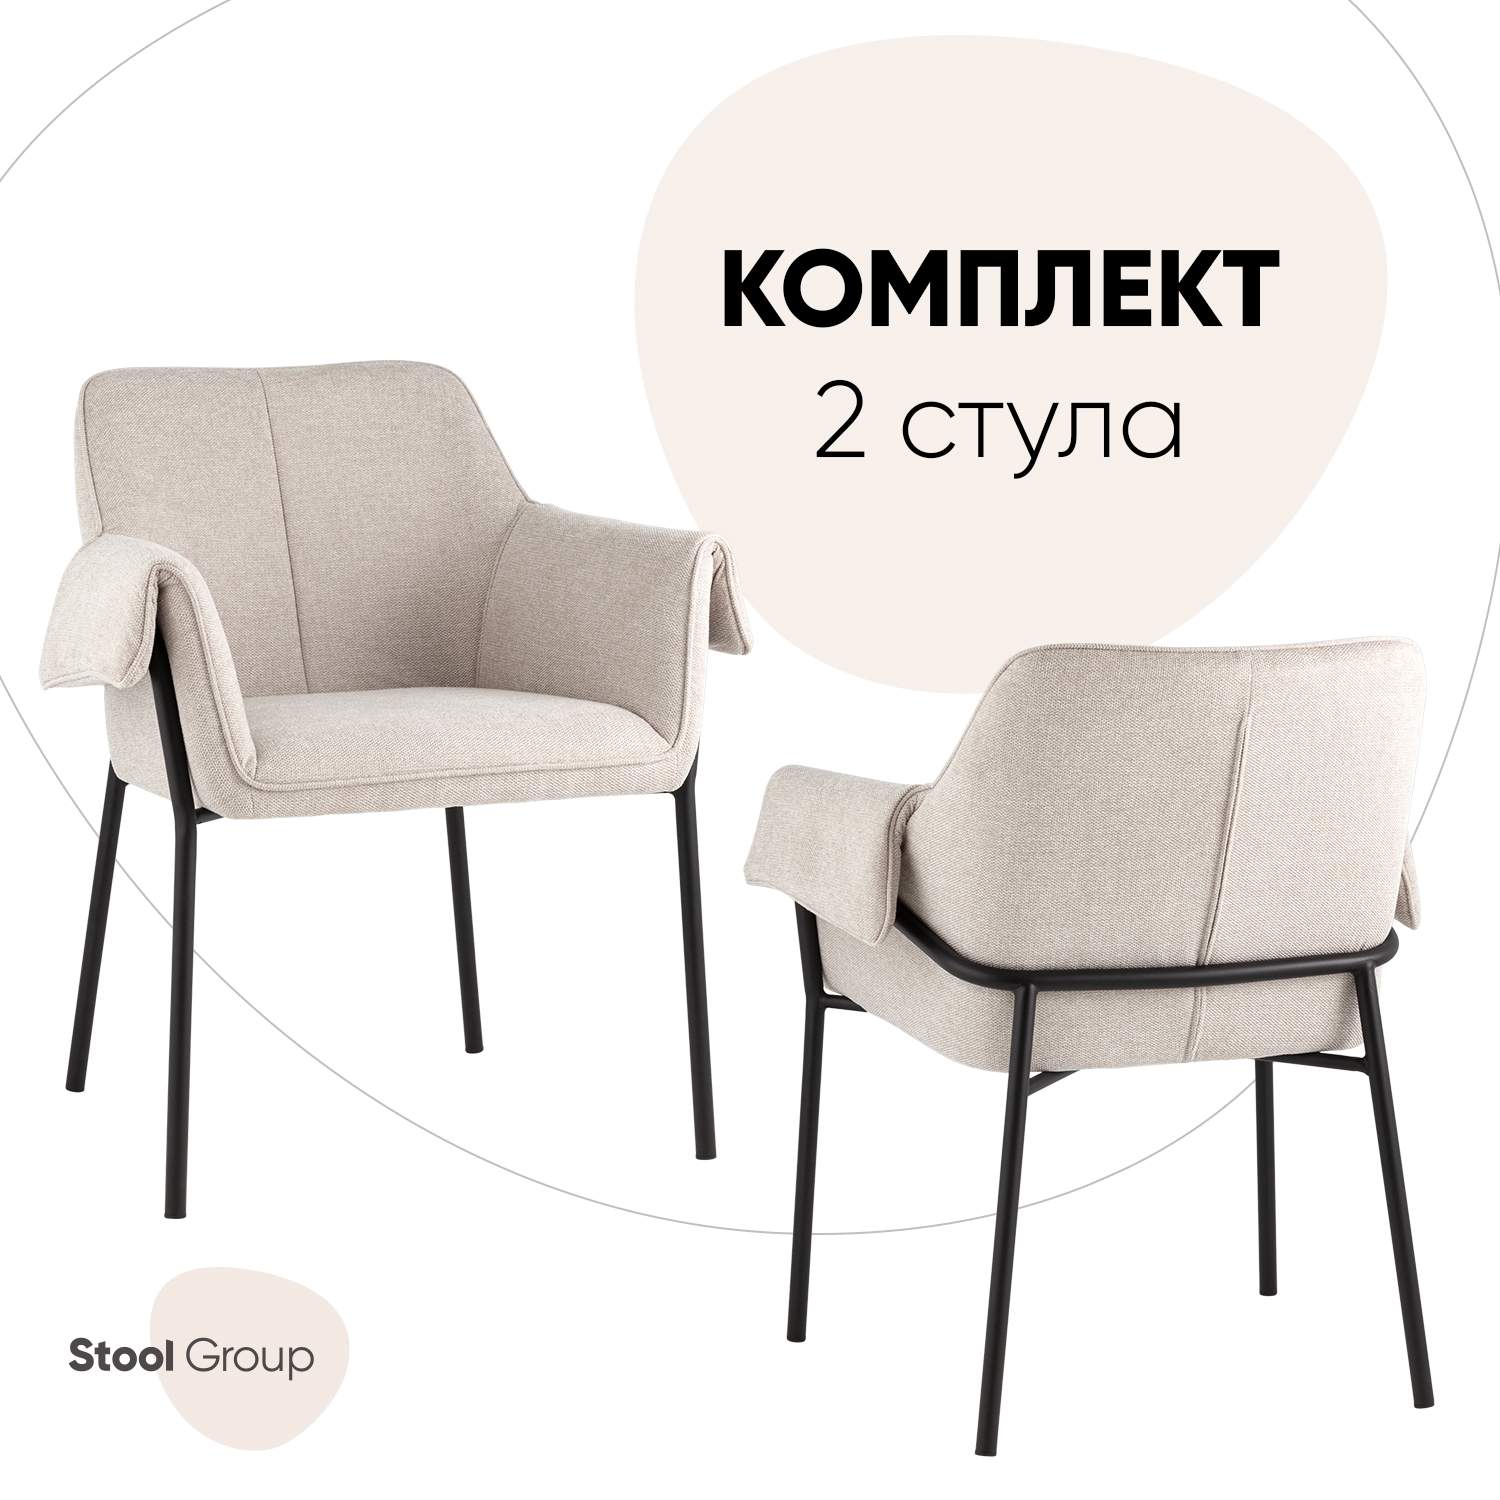 Комплект стульев Stool Group Бесс 2 шт, рогожка, бежевый - купить в Москве, цены на Мегамаркет | 600013660250